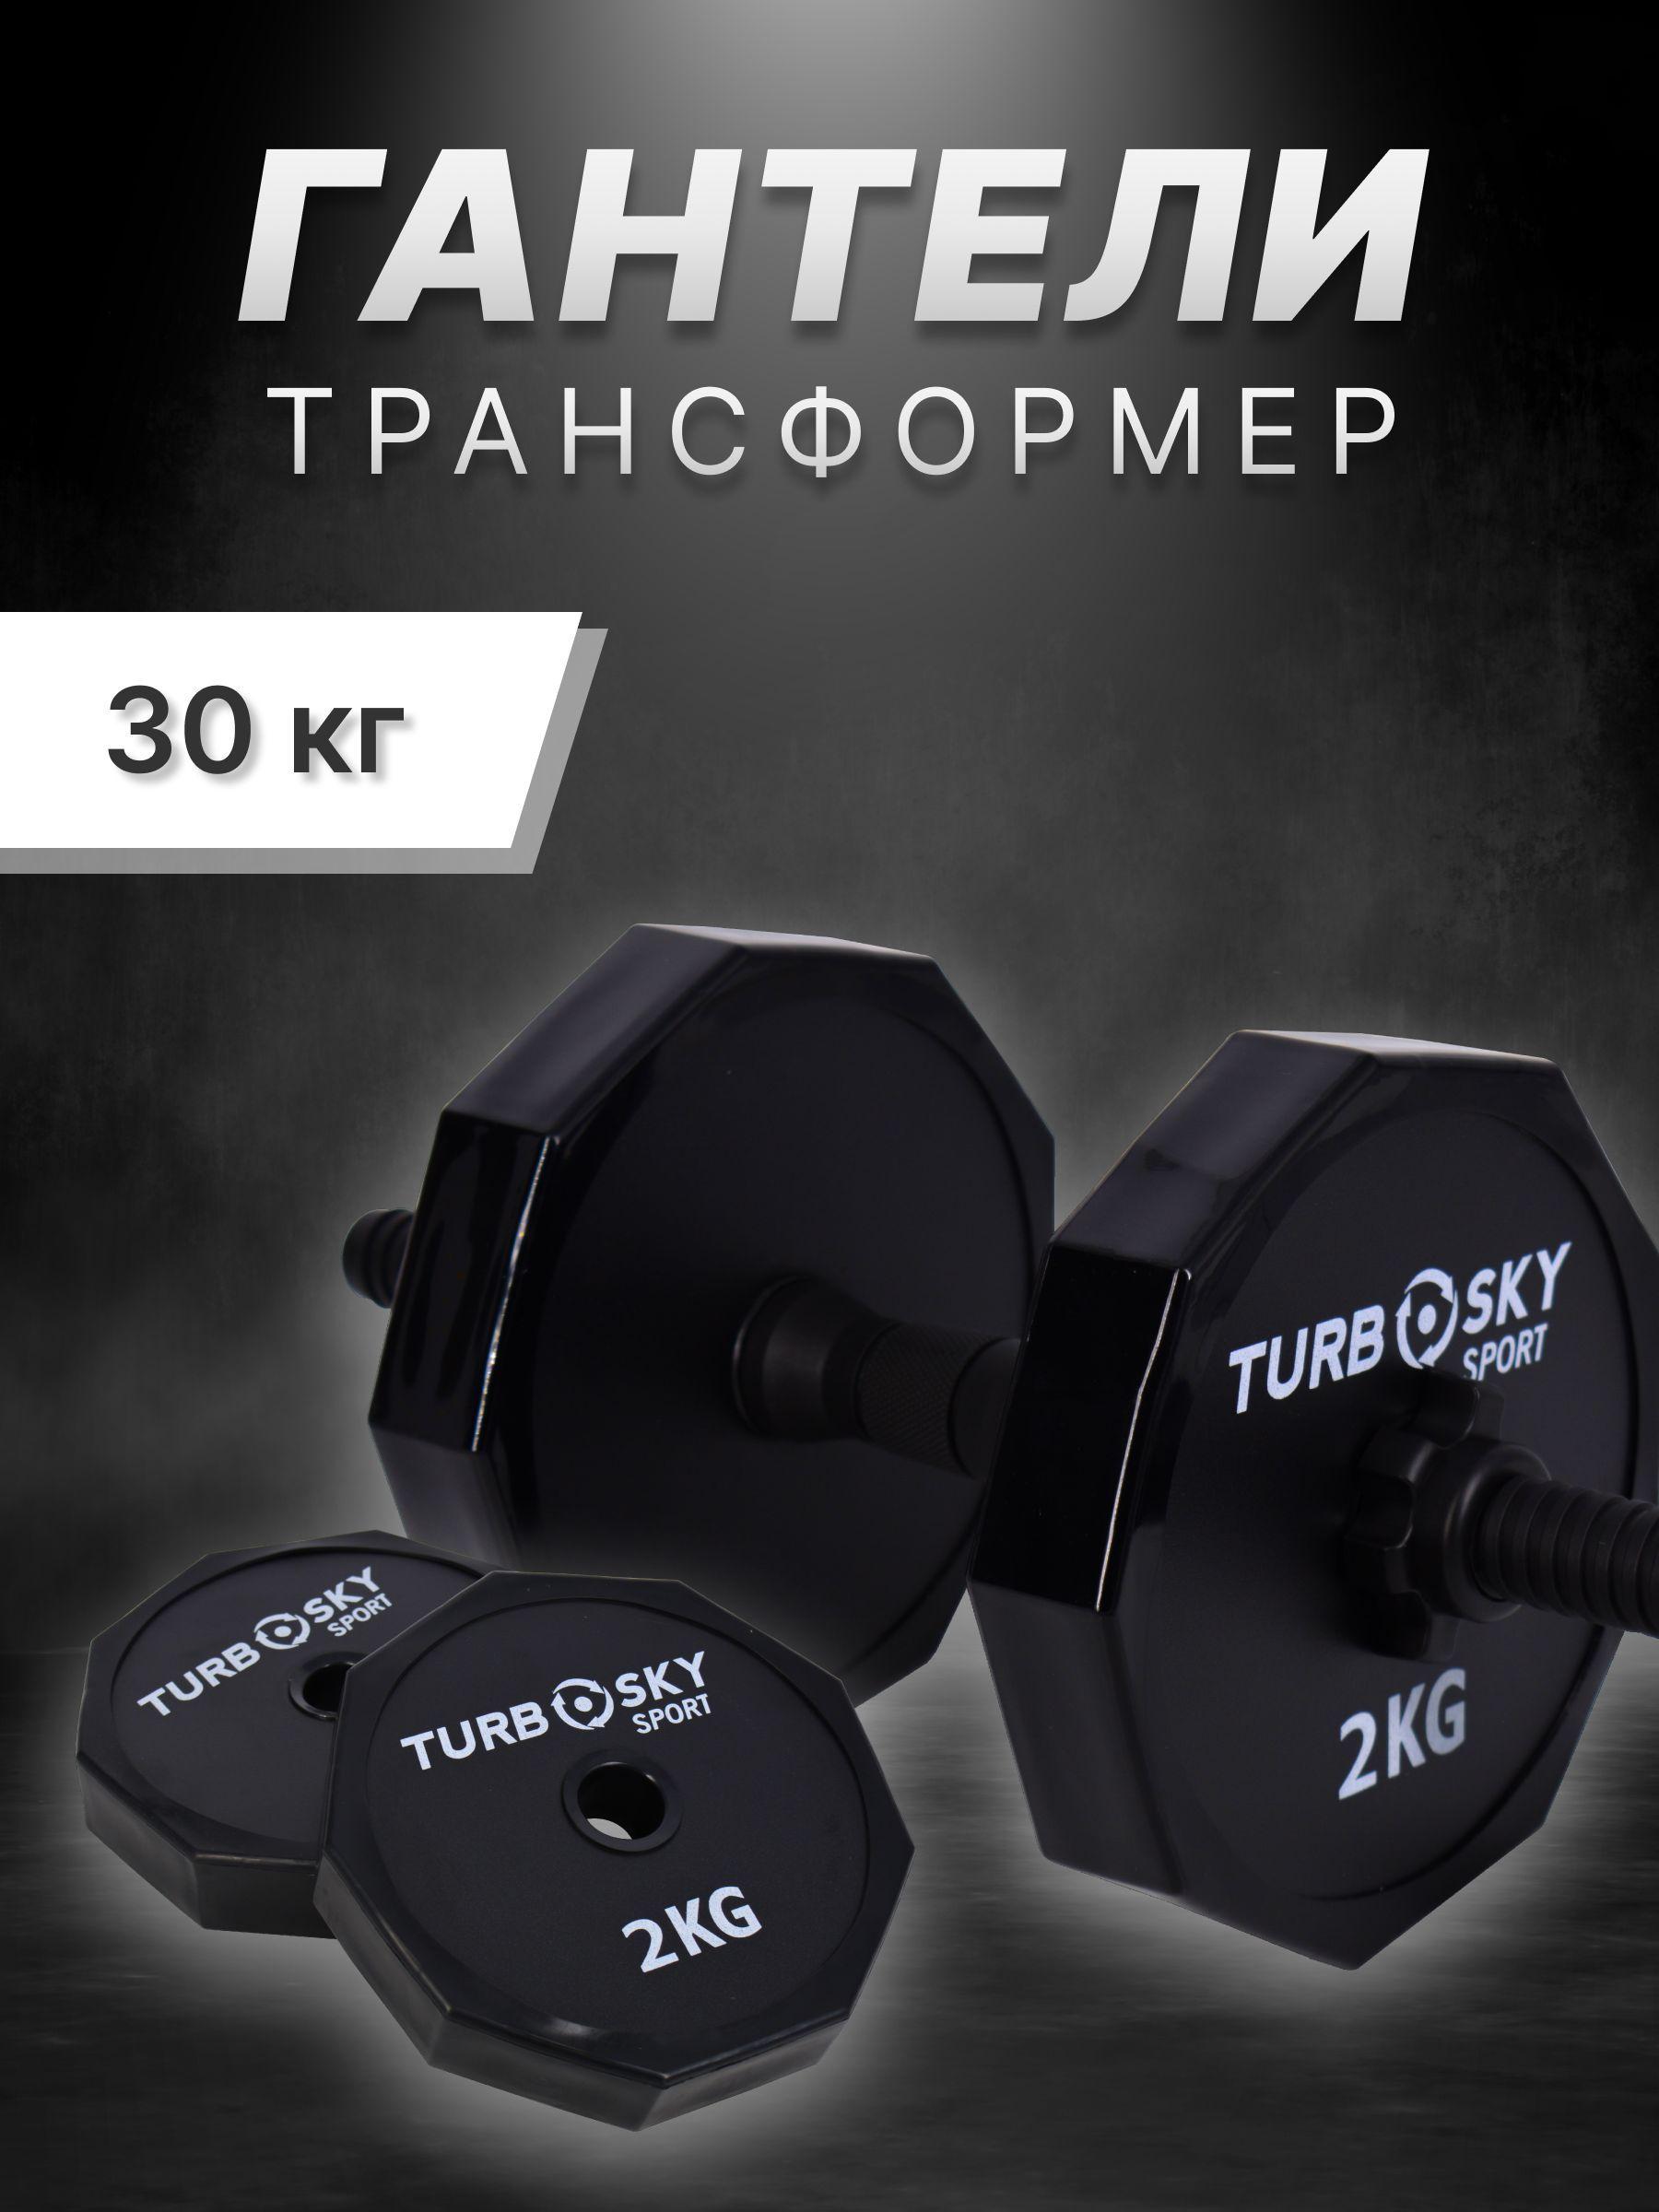 TurboSky | TurboSky Гантели Набор гантелей_30 кг чёрные, 2 шт. по 10 кг, черный матовый цвет